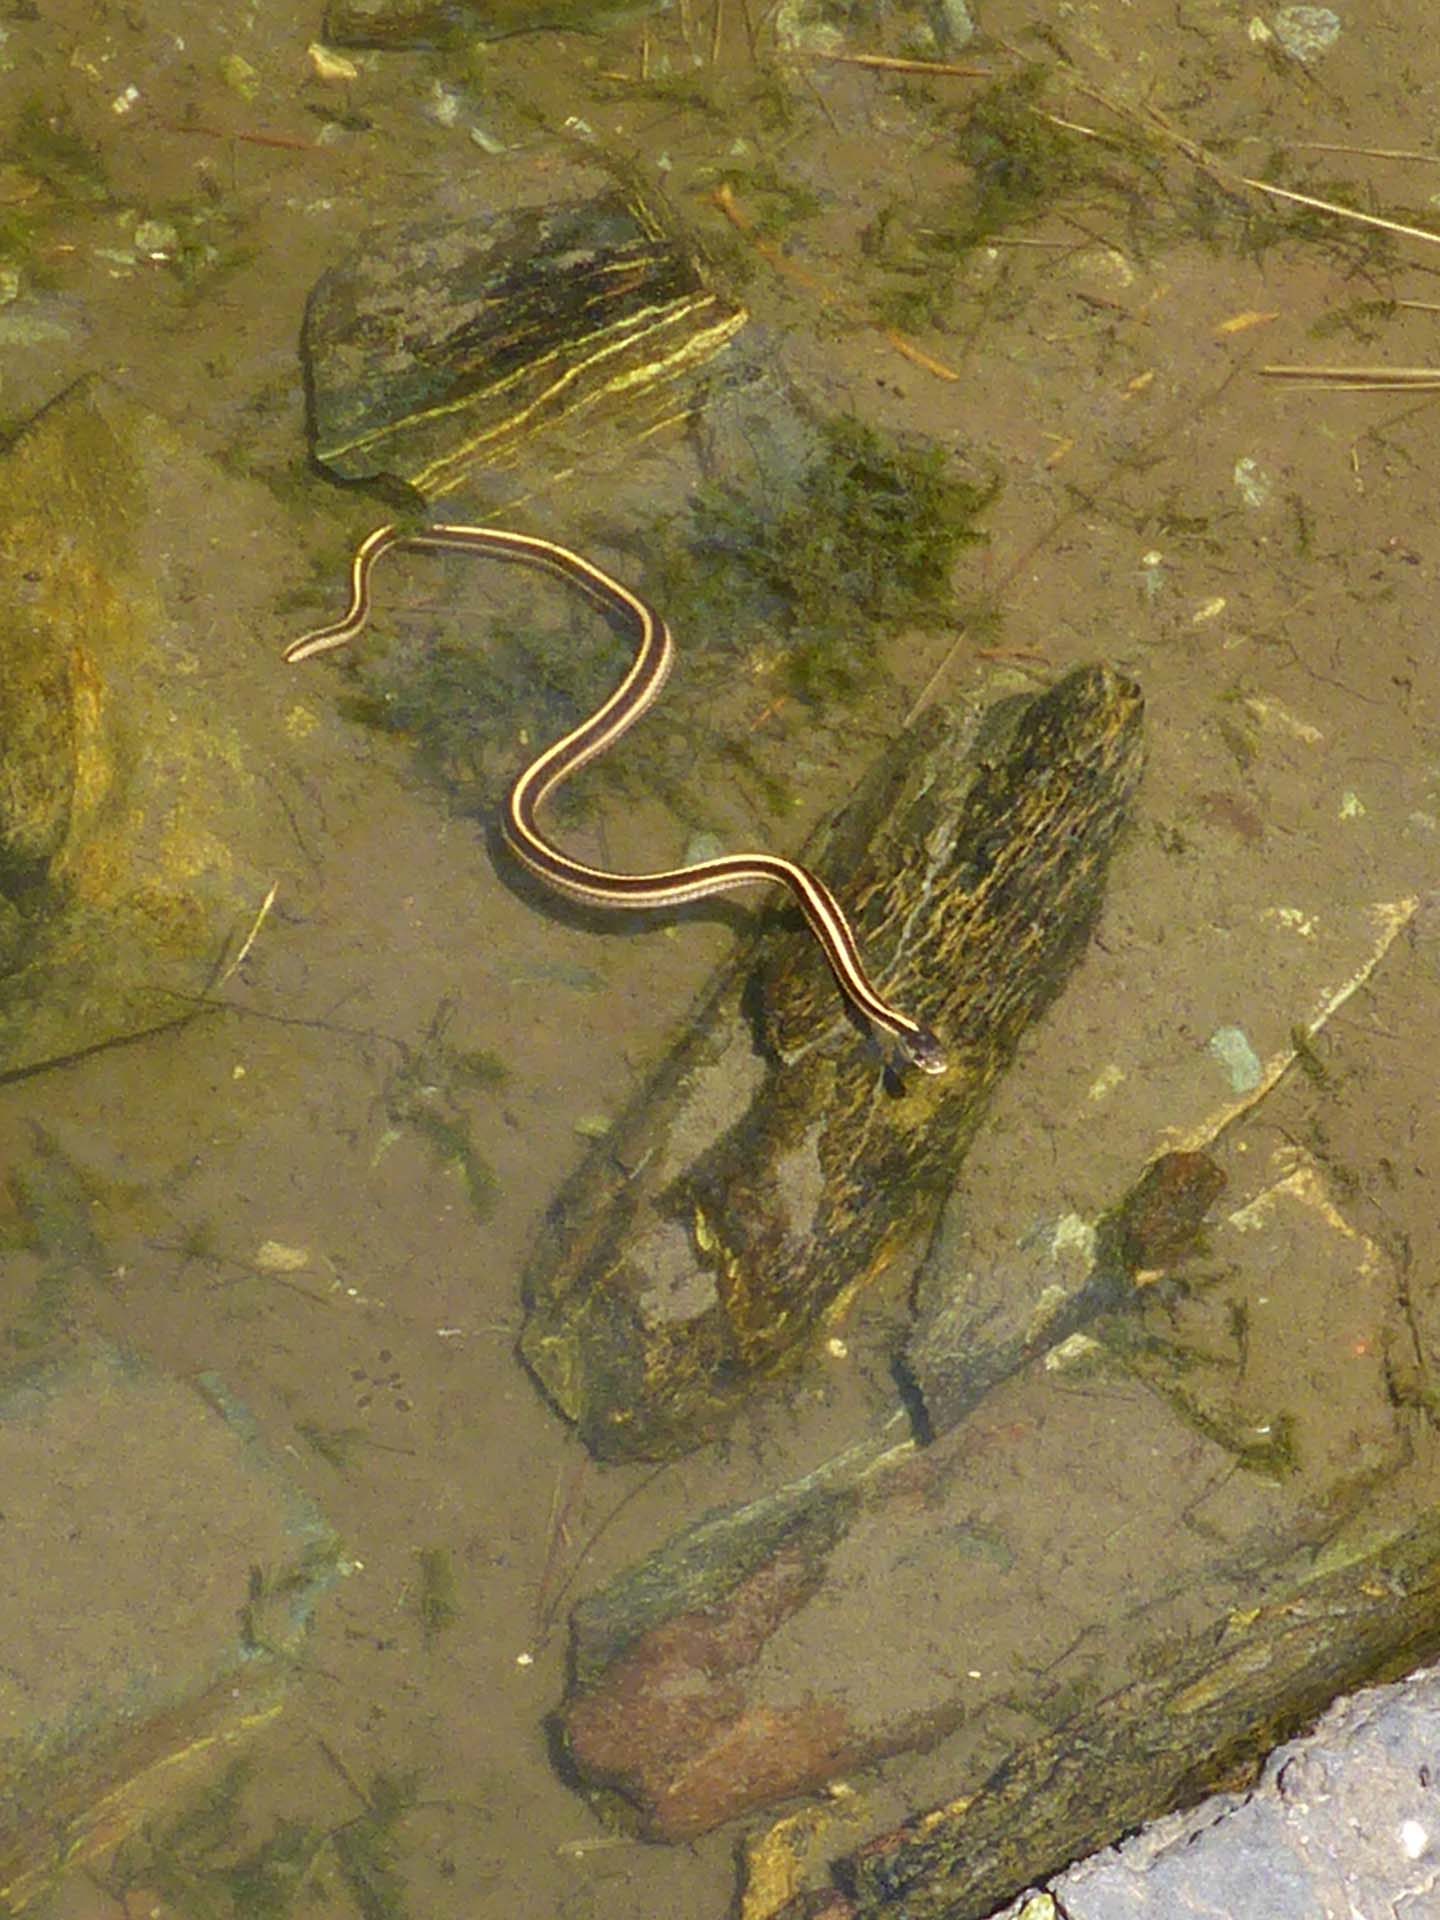 Garter snake in the lake. D. Burk.